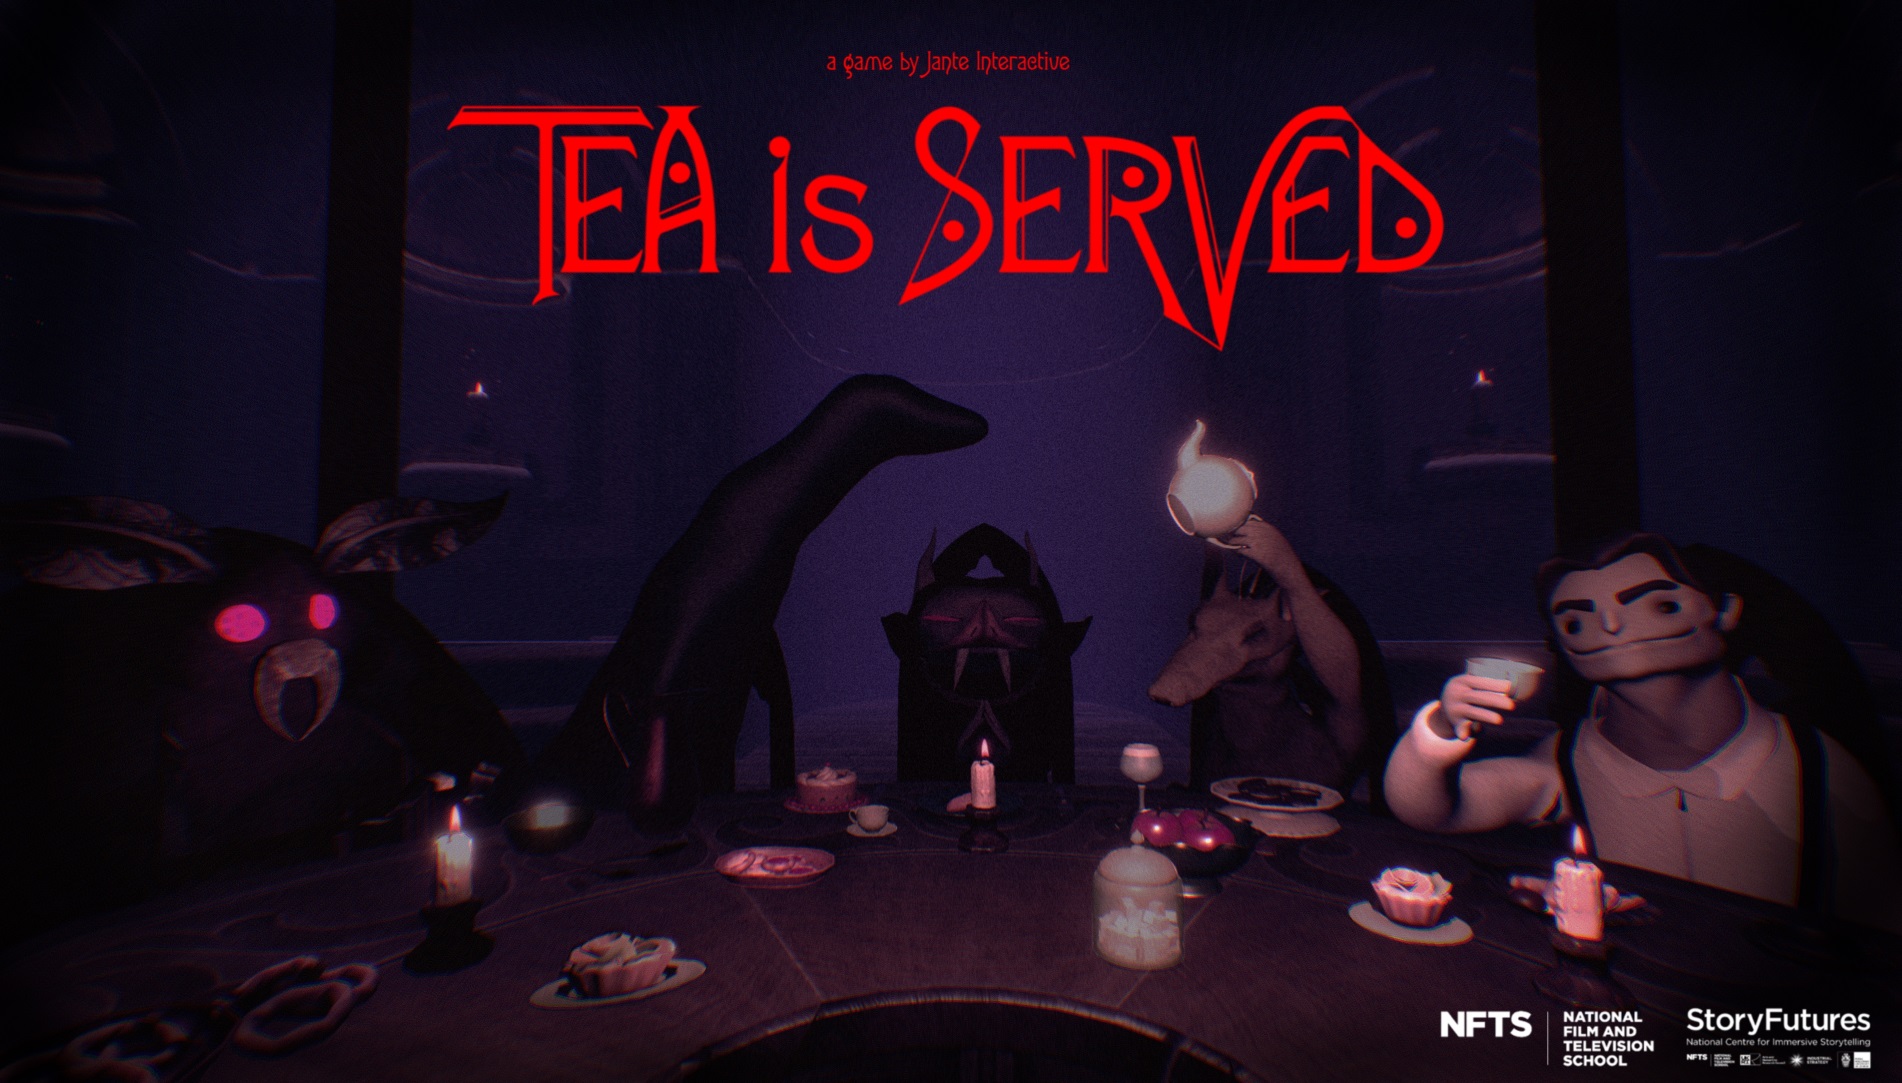 Tea is Served